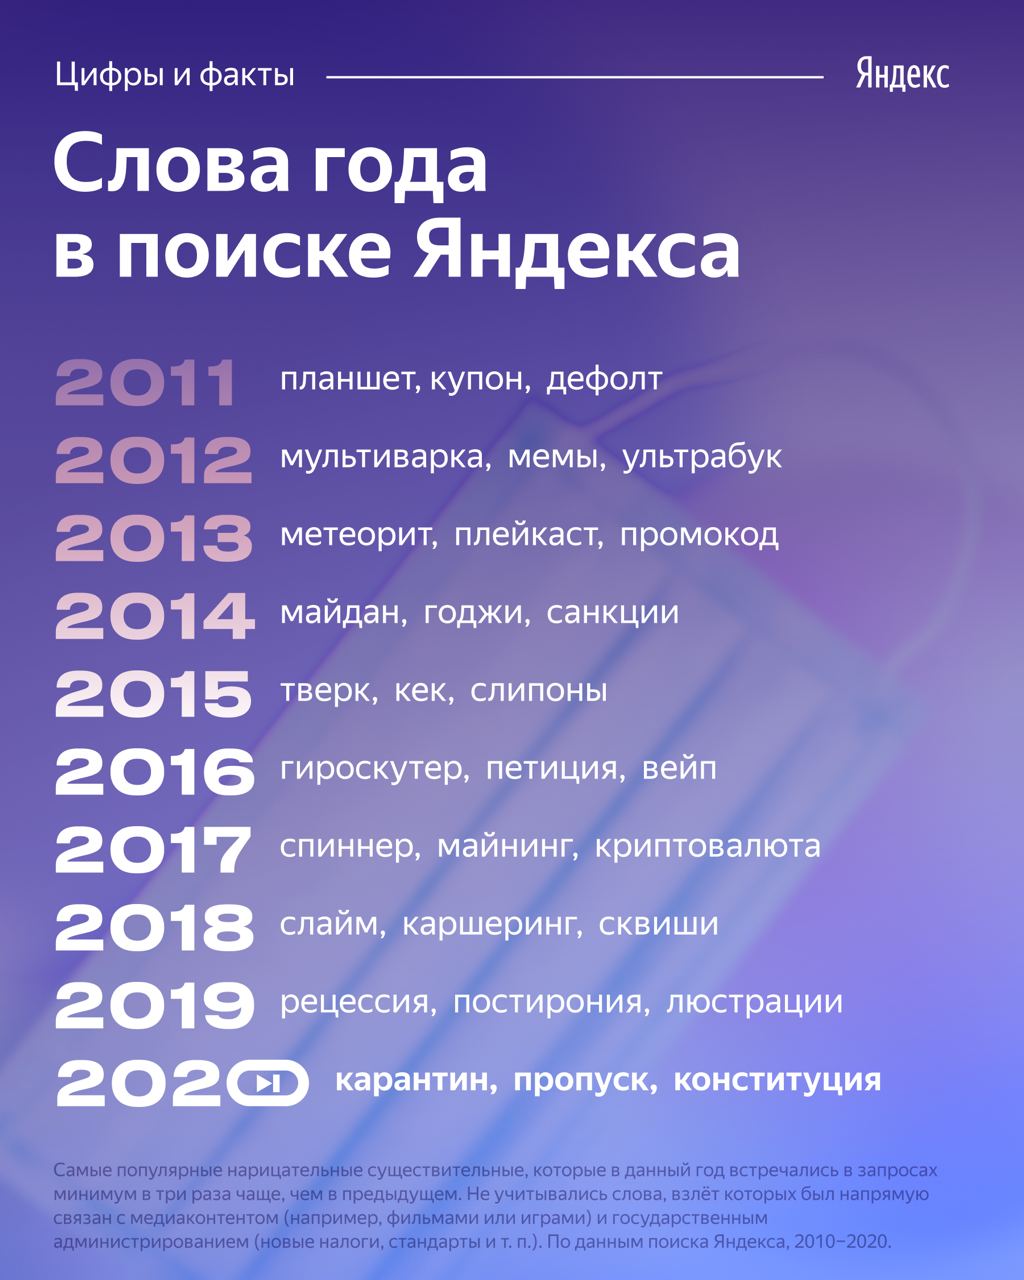 Яндекс назвал самые популярные слова, которые искали за эти 10 лет